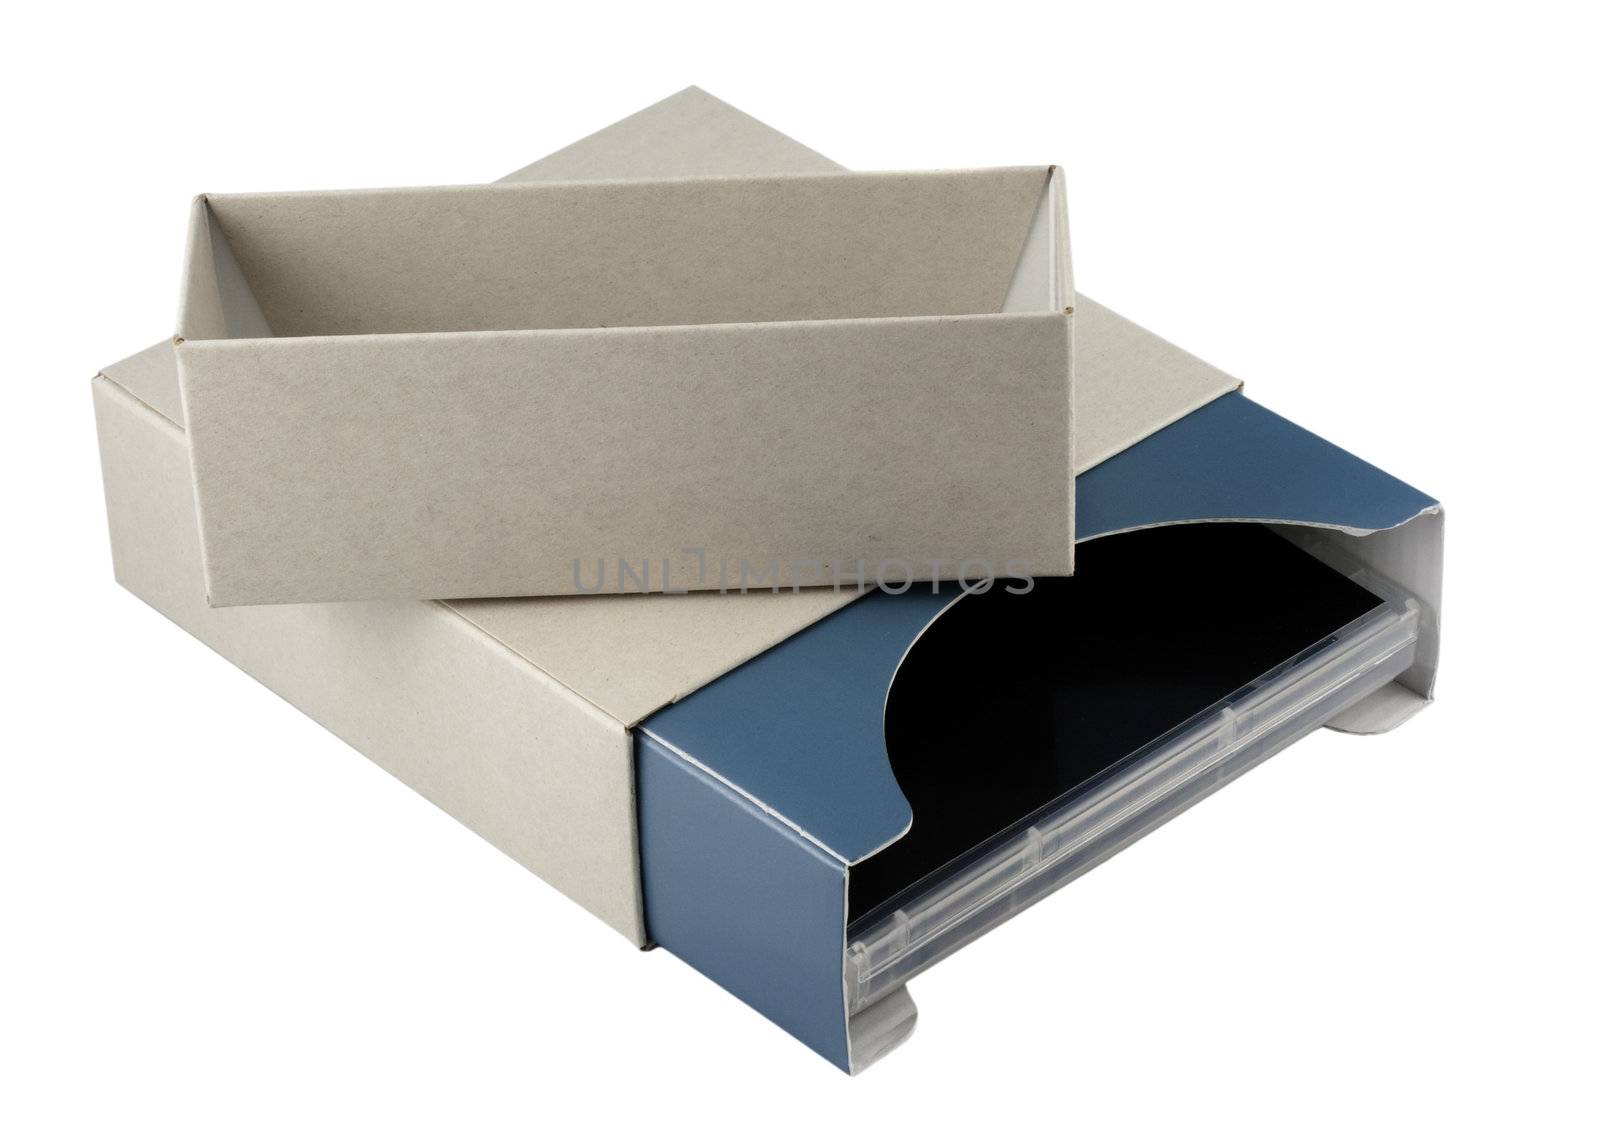 open cardboard box with dvd inside by PixelsAway